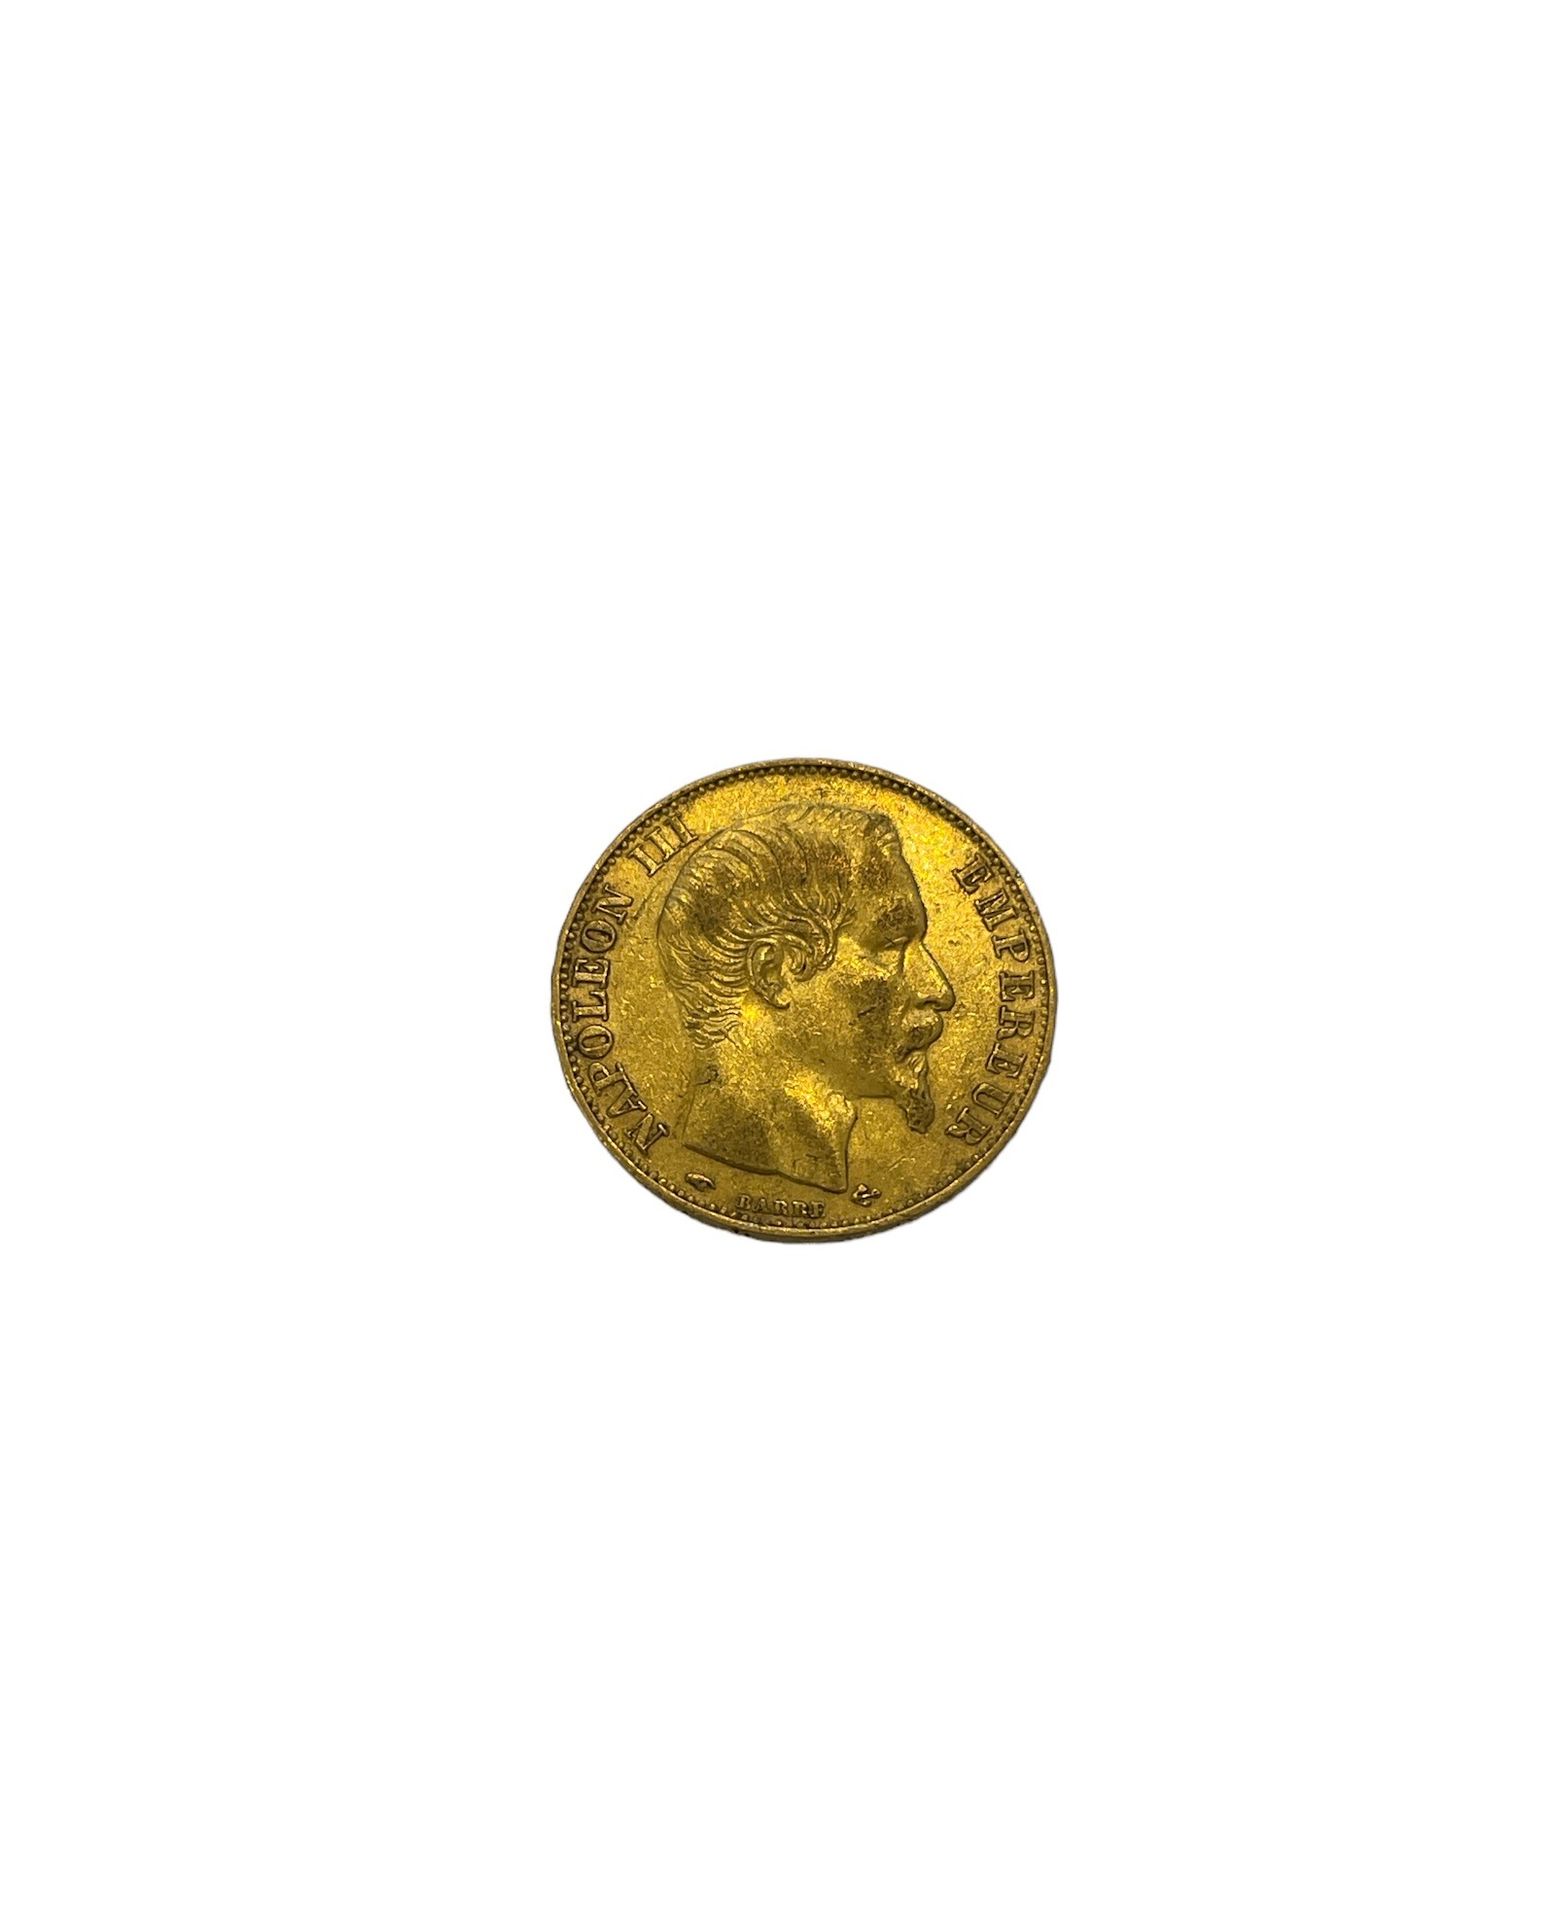 Null FRANCIA
1 moneta da 20 franchi oro Napoleone III
Peso: 7 g